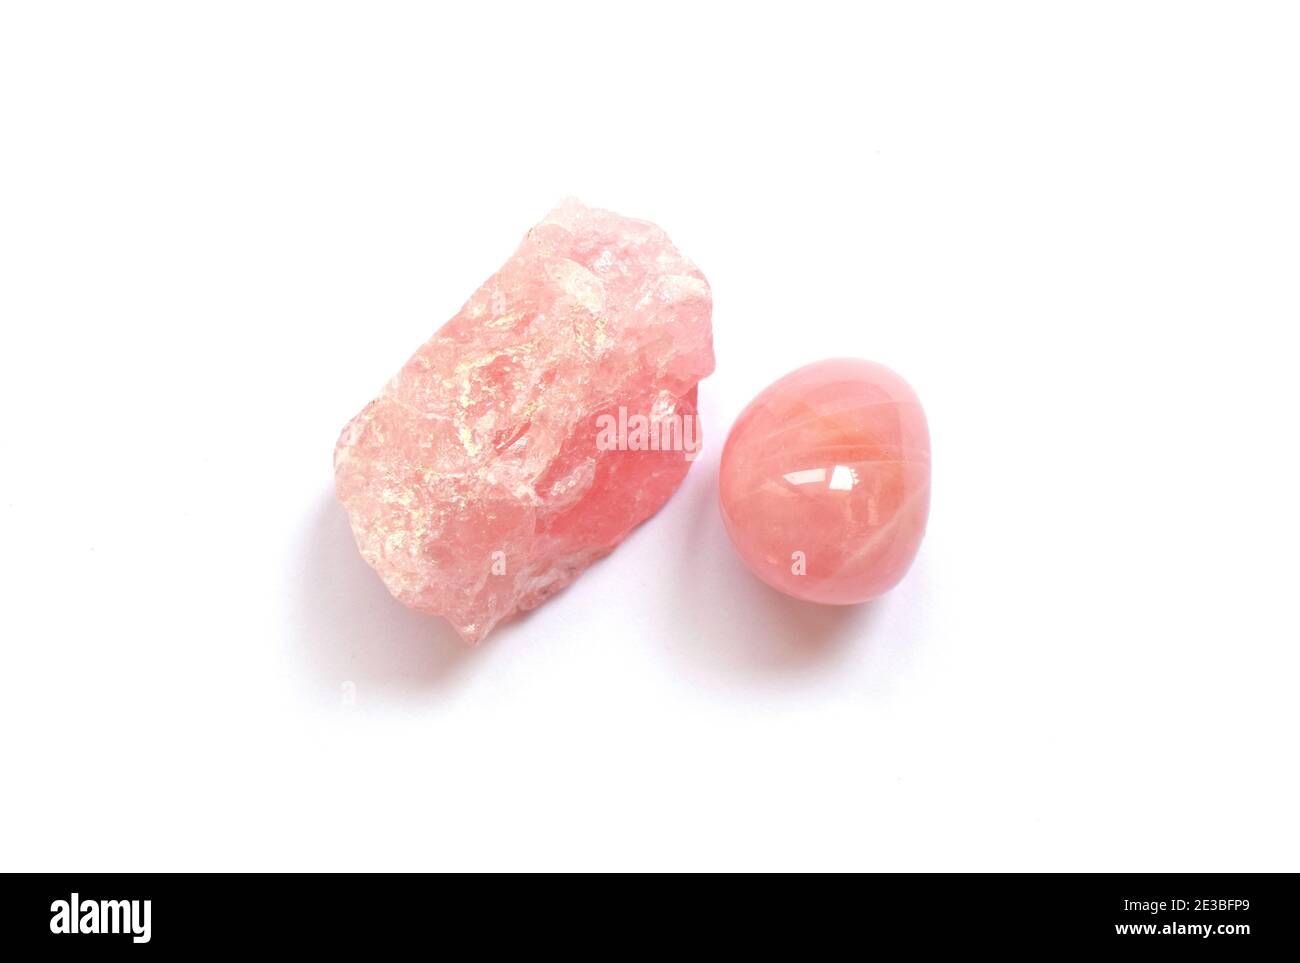 Edelsteine liegen auf dem Tisch. Kristalle aus Rosenquarz, rosa Edelstein. Stockfoto